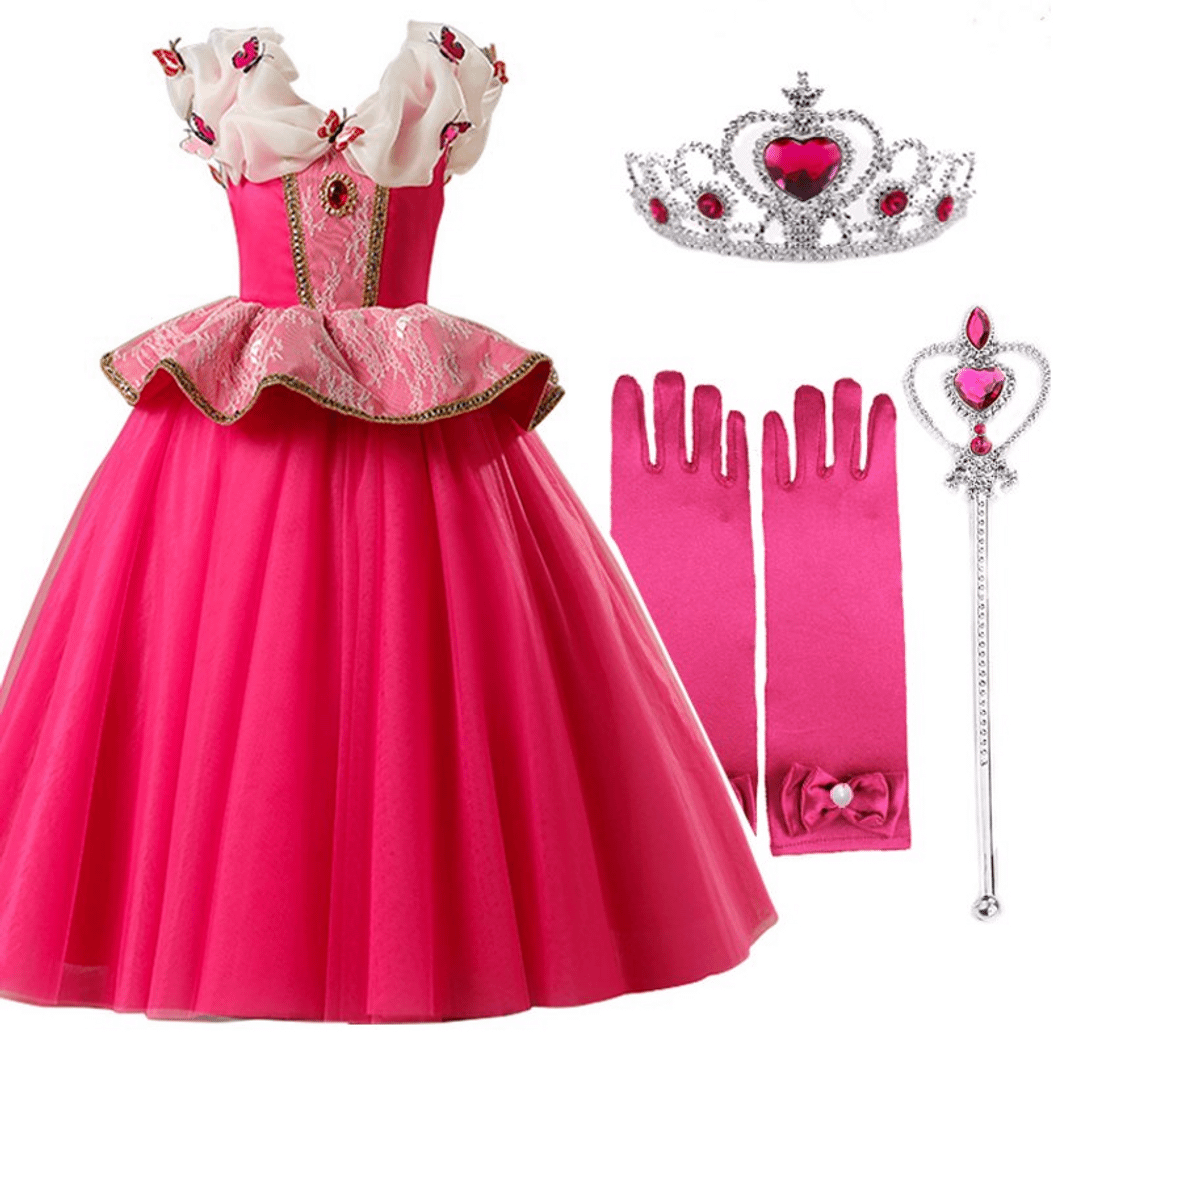 quero ver vestido de princesa